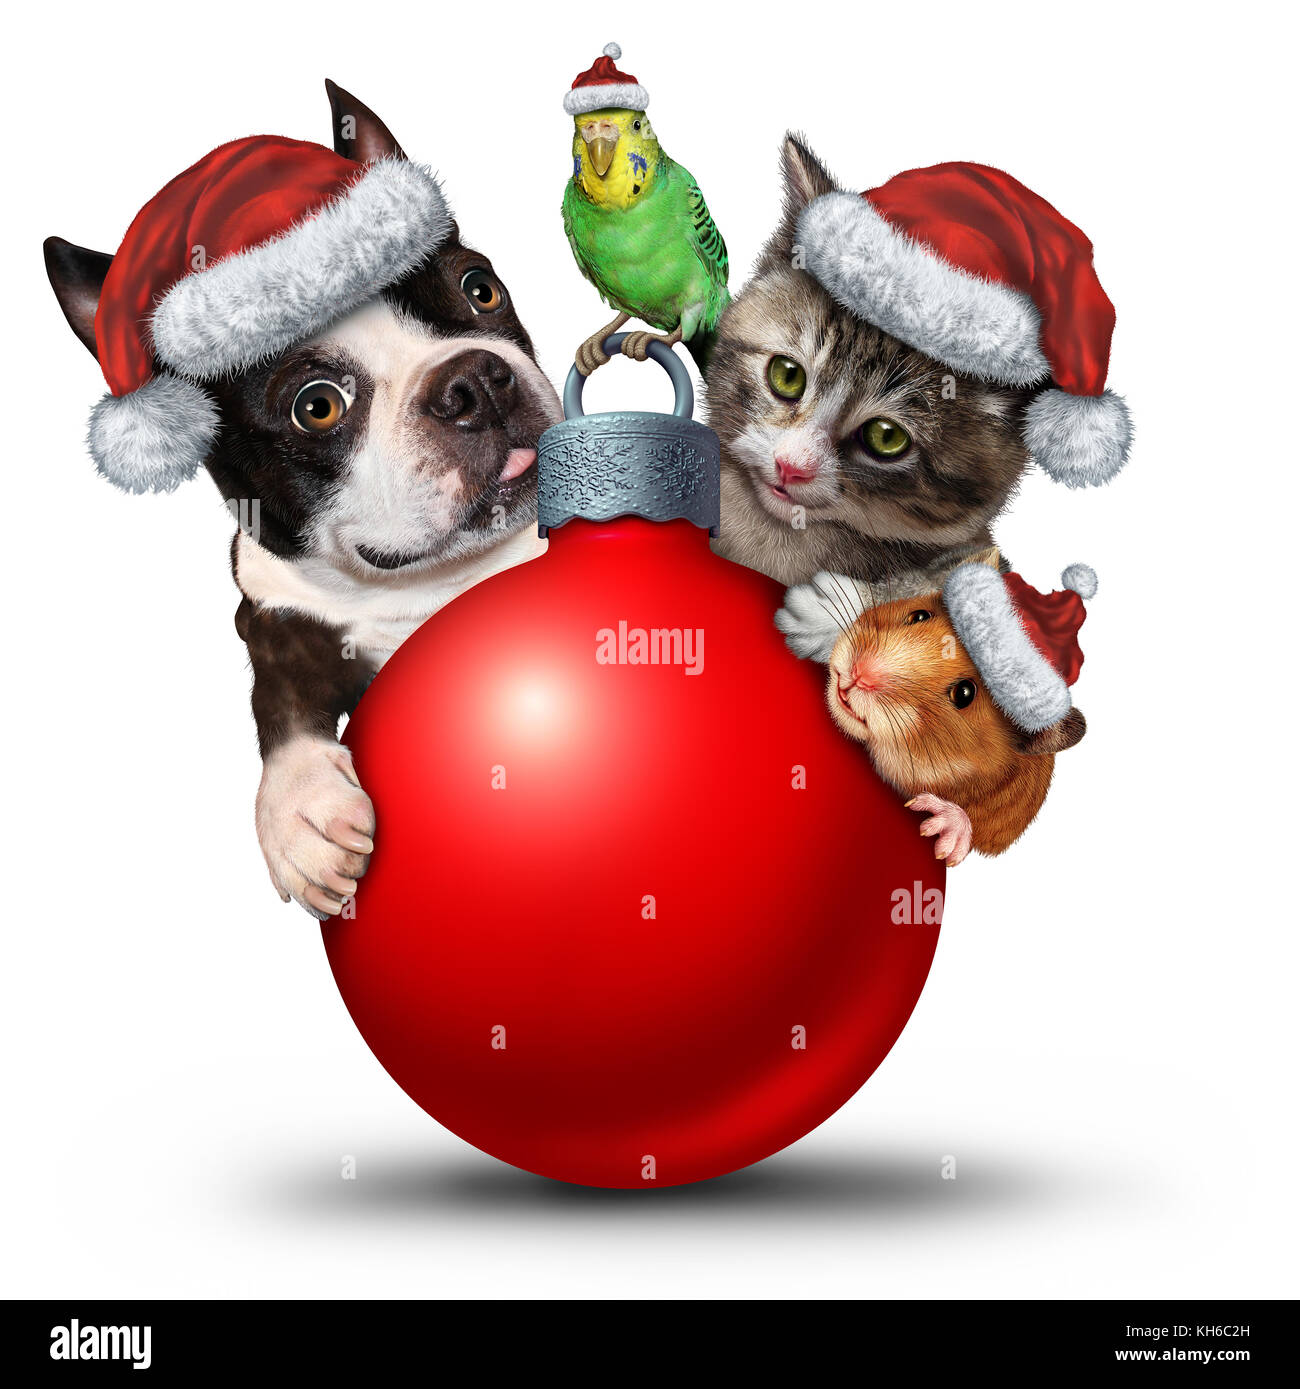 Mascotas decoración de navidad ornamento como un lindo gato cachorro y pájaro con un adorable hamster llevando un gorro de Papá Noel como un símbolo de temporada de invierno. Foto de stock